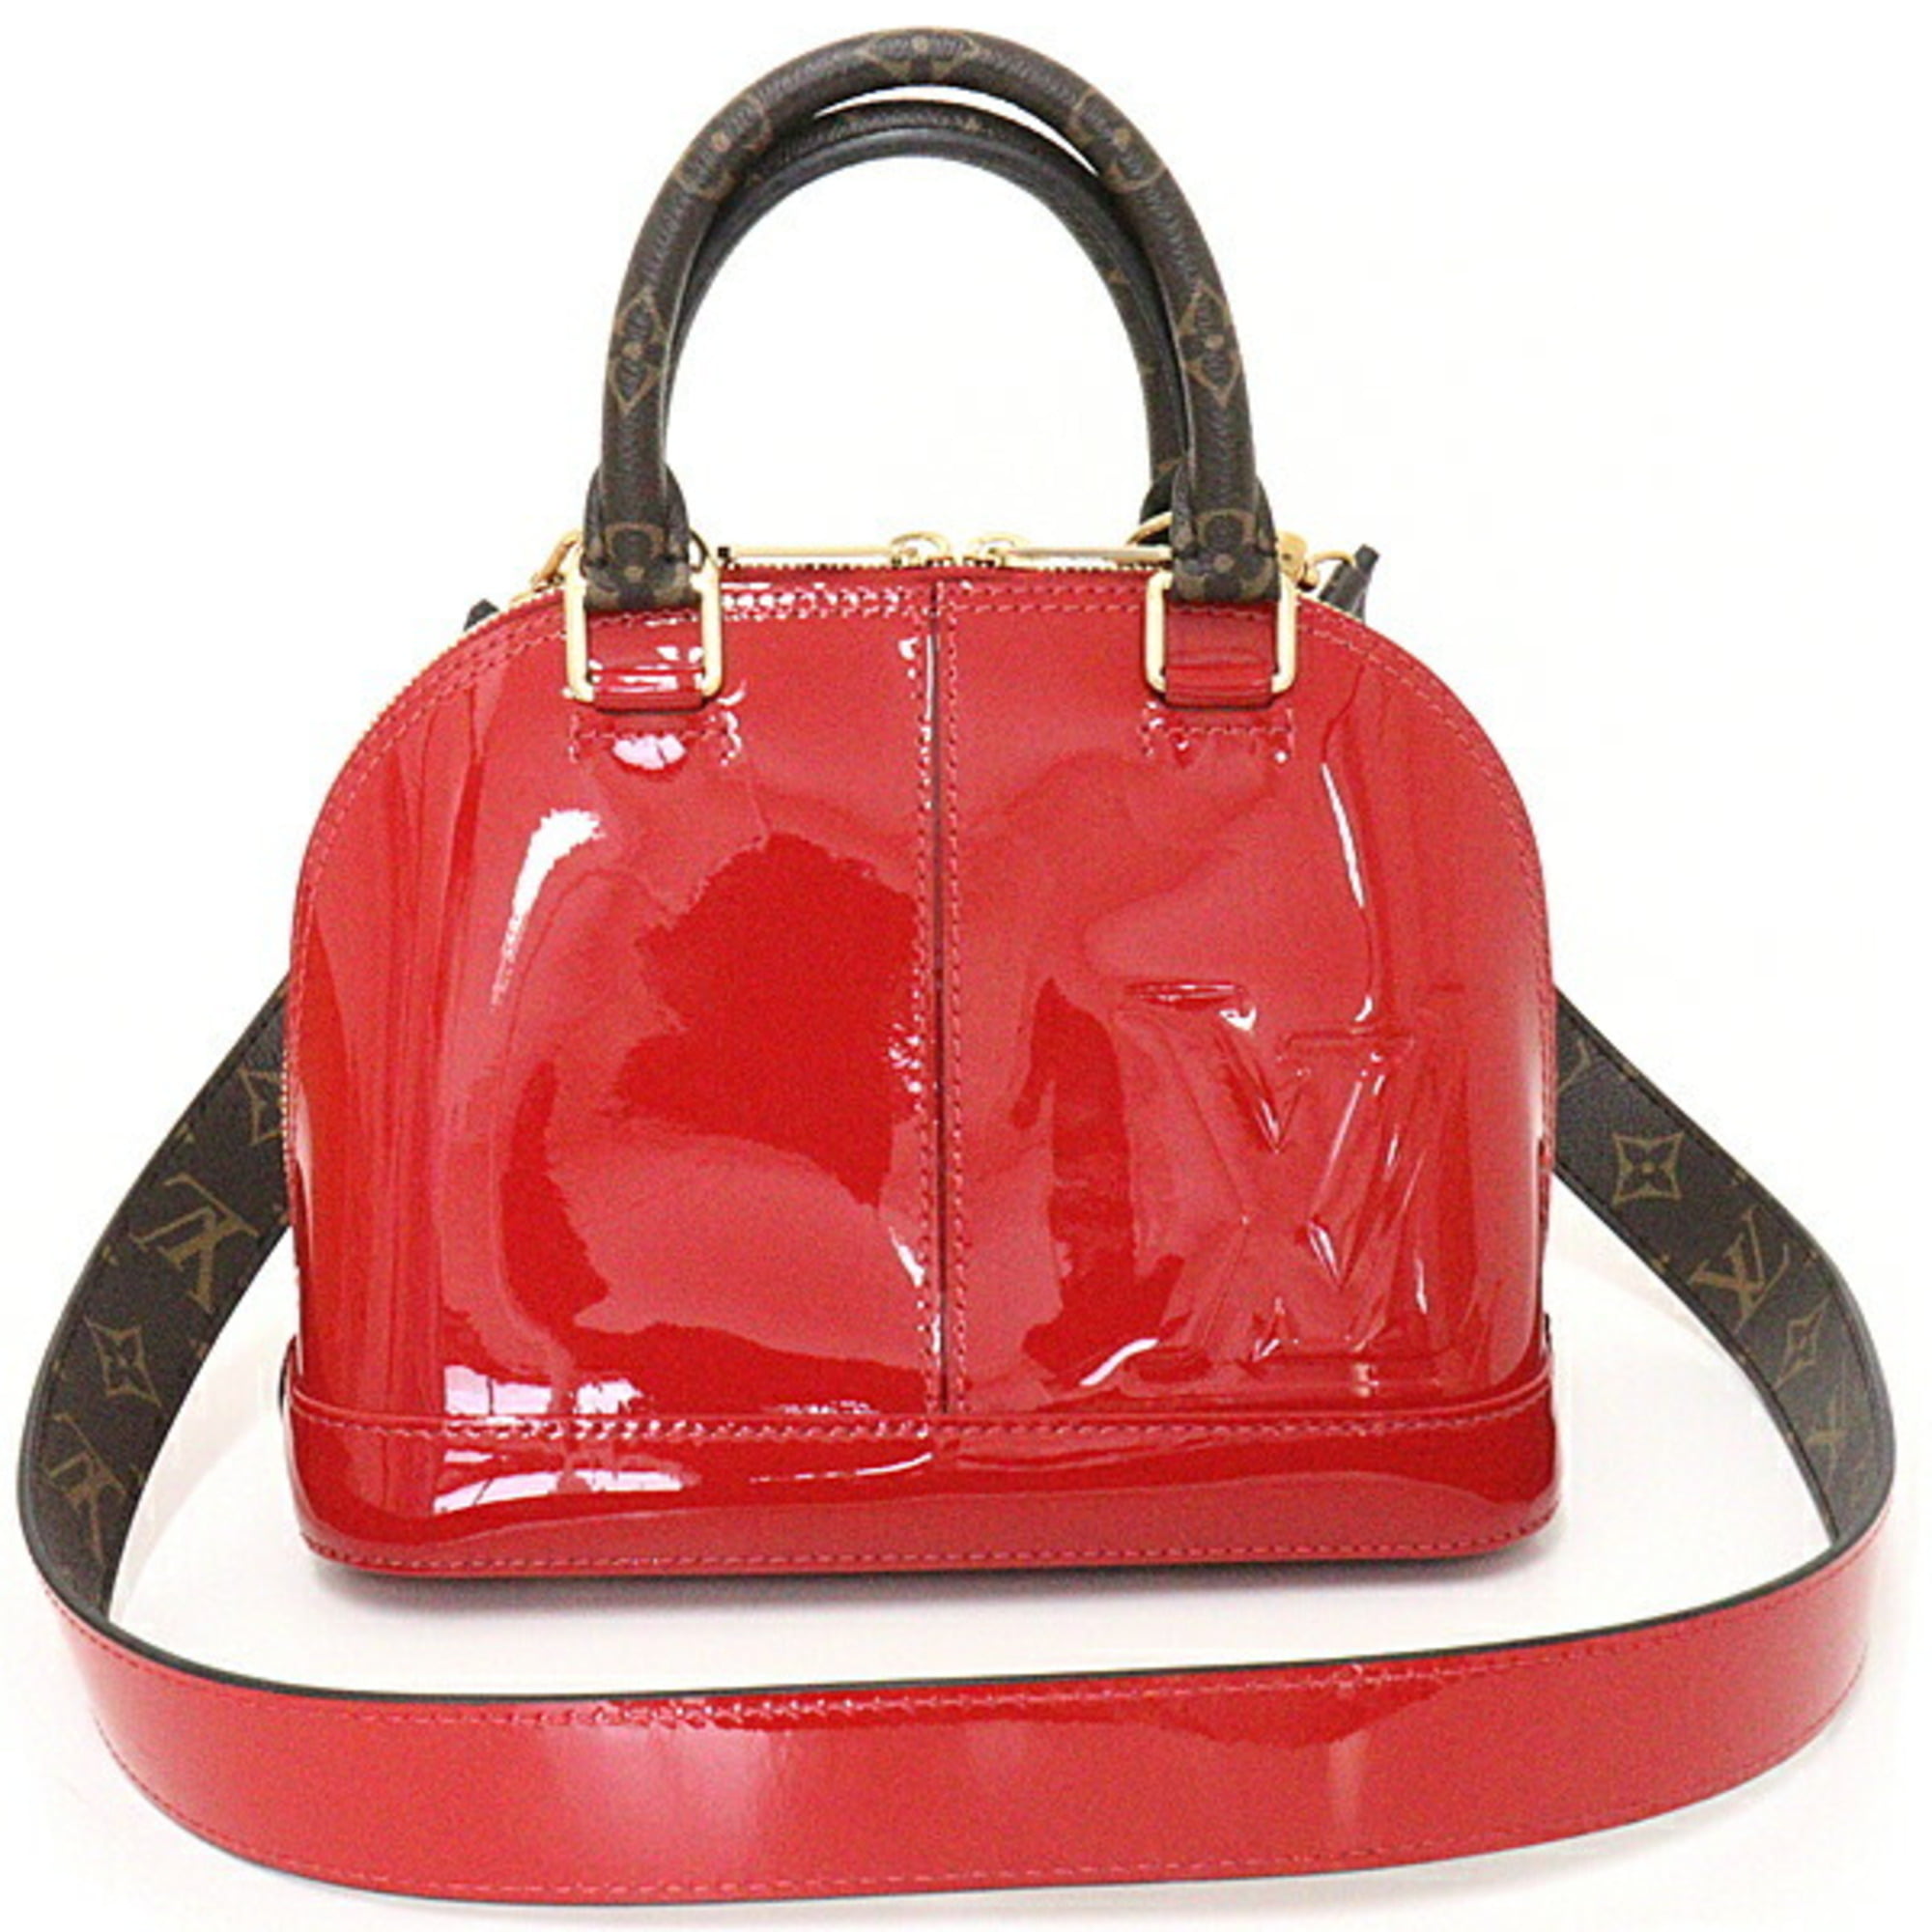 Authenticated Used Louis Vuitton Handbag Monogram Vernis Alma PM